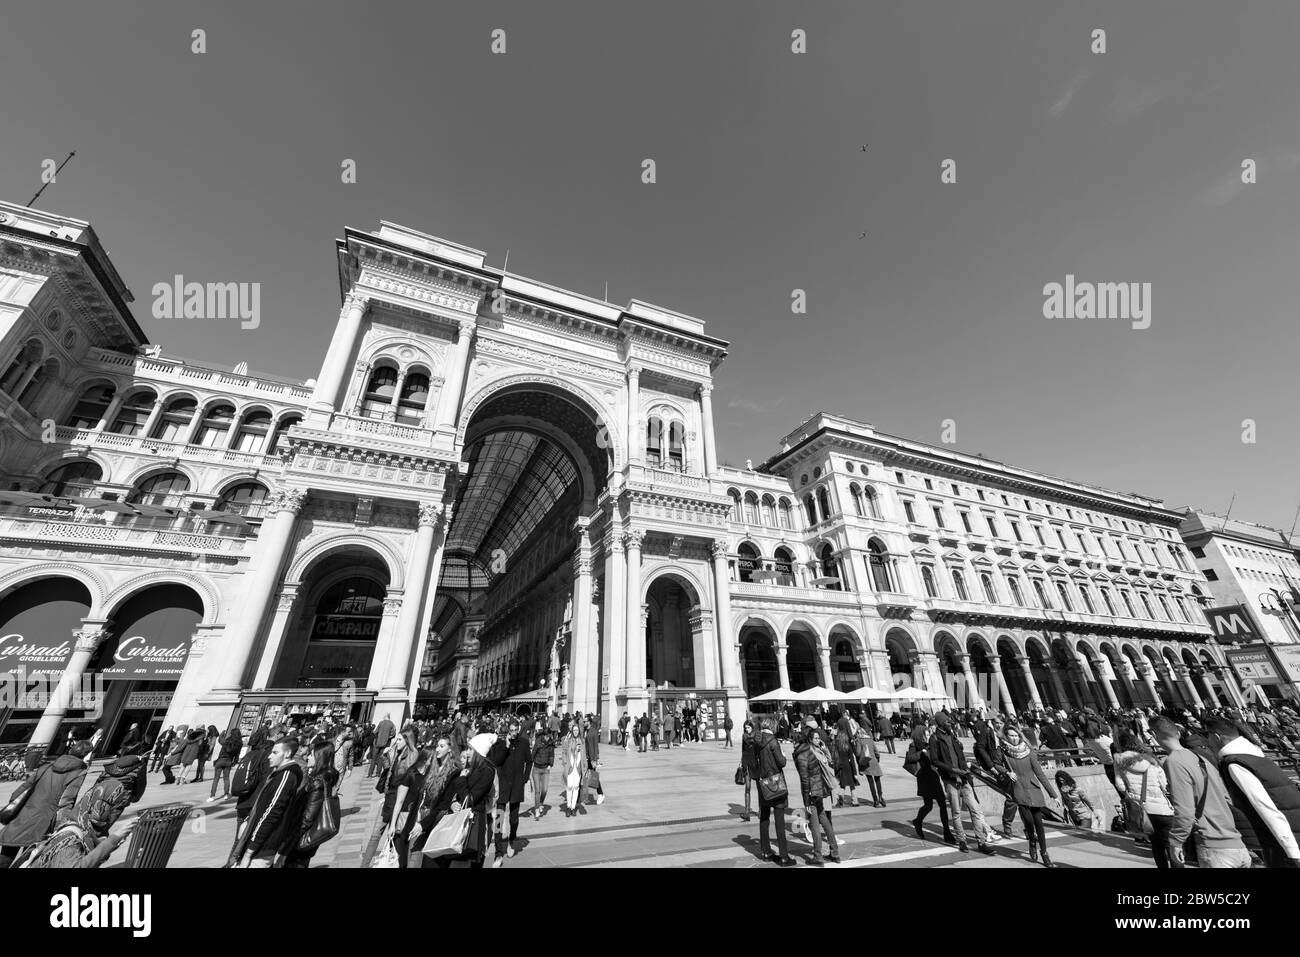 MILANO - 16 MARZO 2018: Immagine in bianco e nero dell'esterno della Galleria Vittorio Emanuele II, una visita turistica di Milano Foto Stock